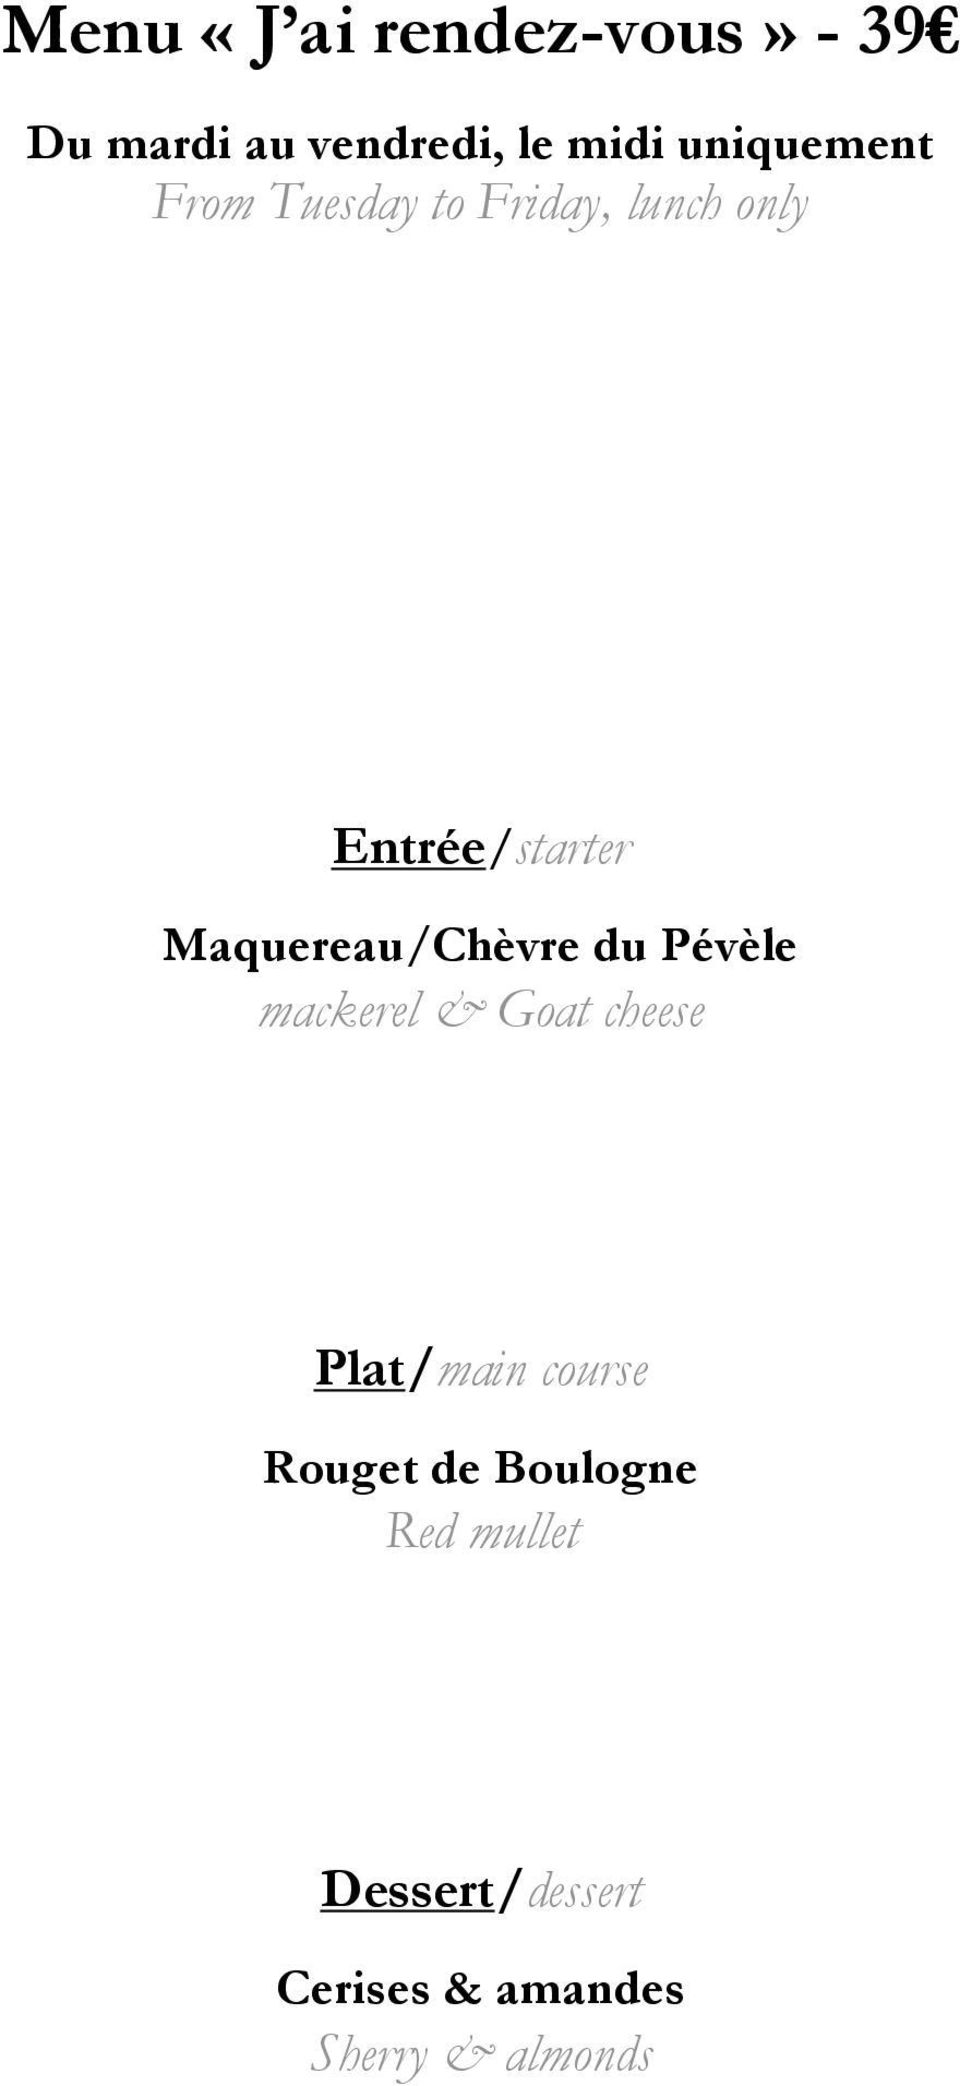 Maquereau/Chèvre du Pévèle mackerel & Goat cheese Plat/main course